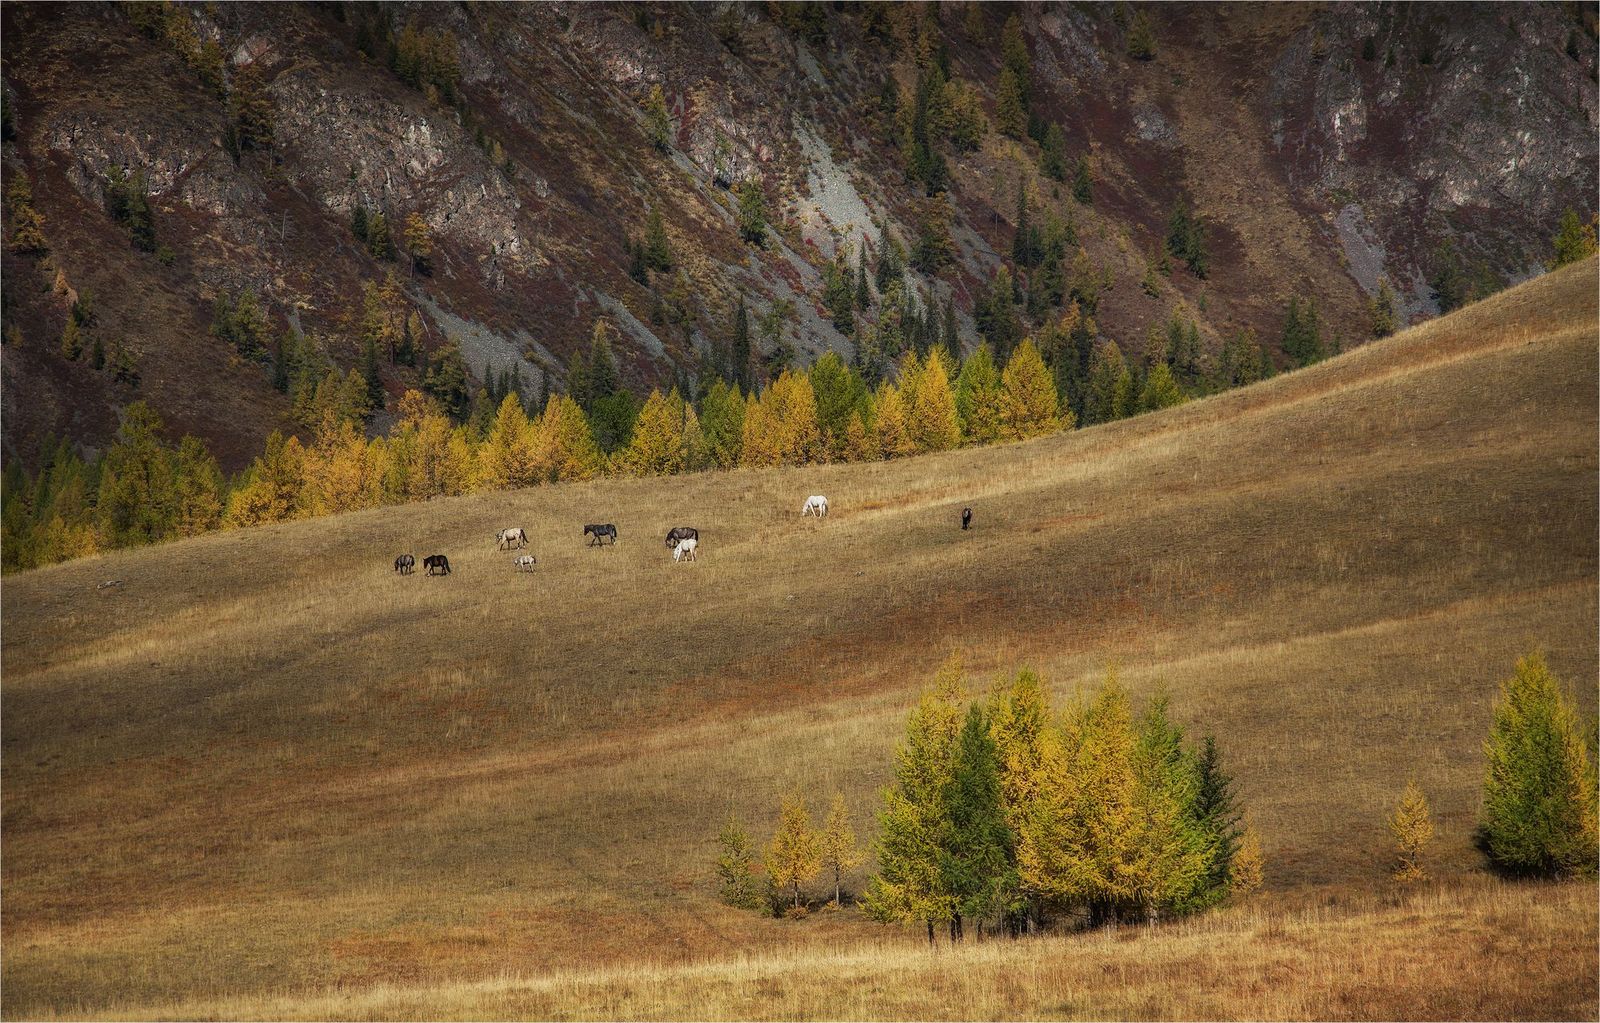 Velvet autumn of Altai - Altai, Russia, Gotta go, Nature, Autumn, Photo, The photo, Landscape, Longpost, Altai Republic